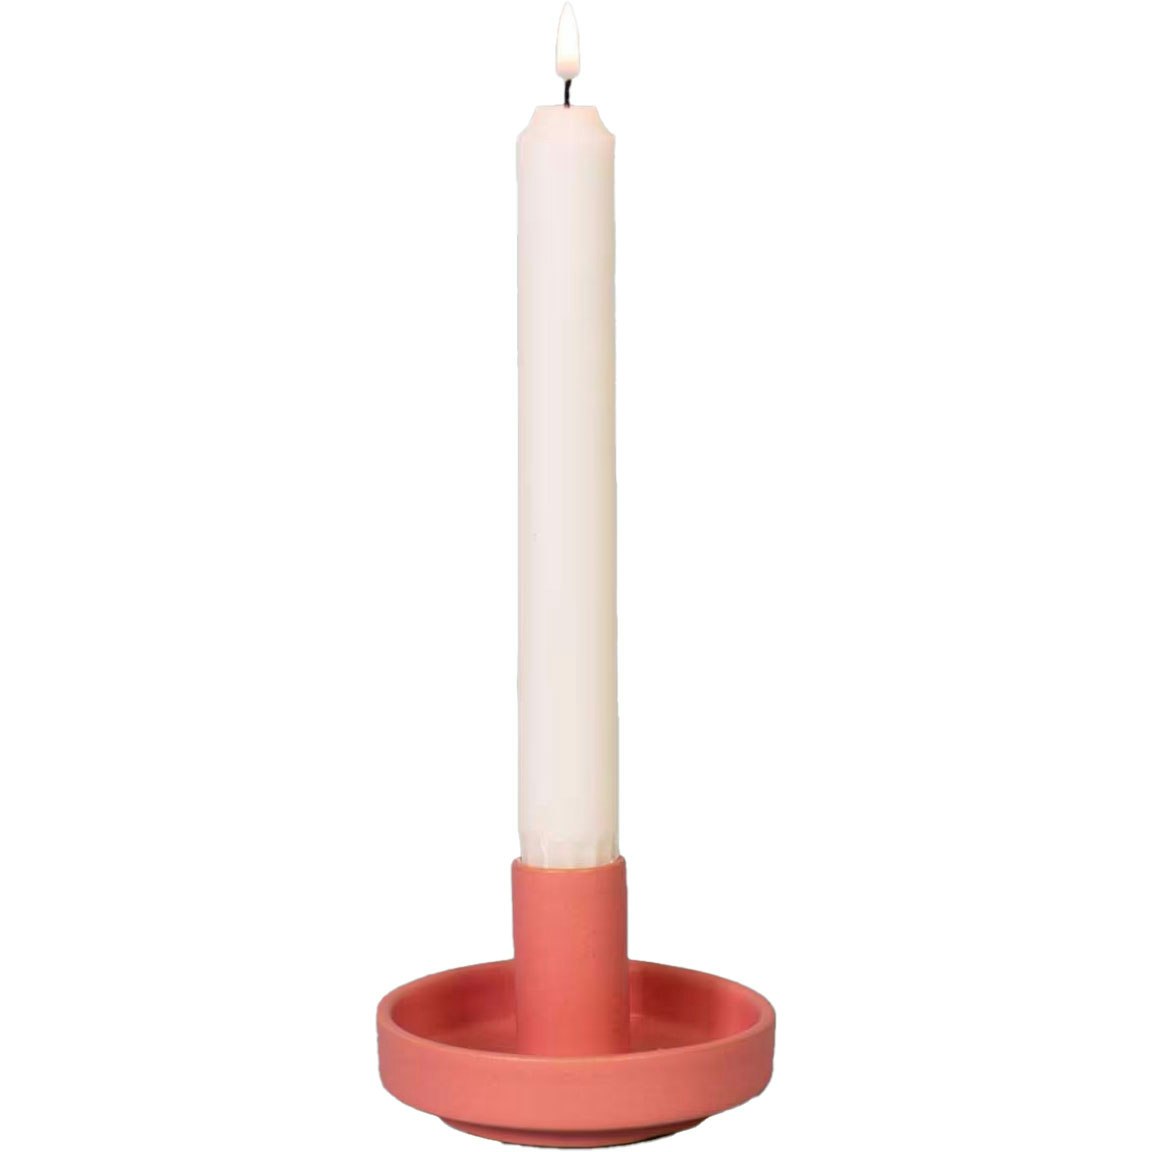 Hermes Candle Holder, Pink